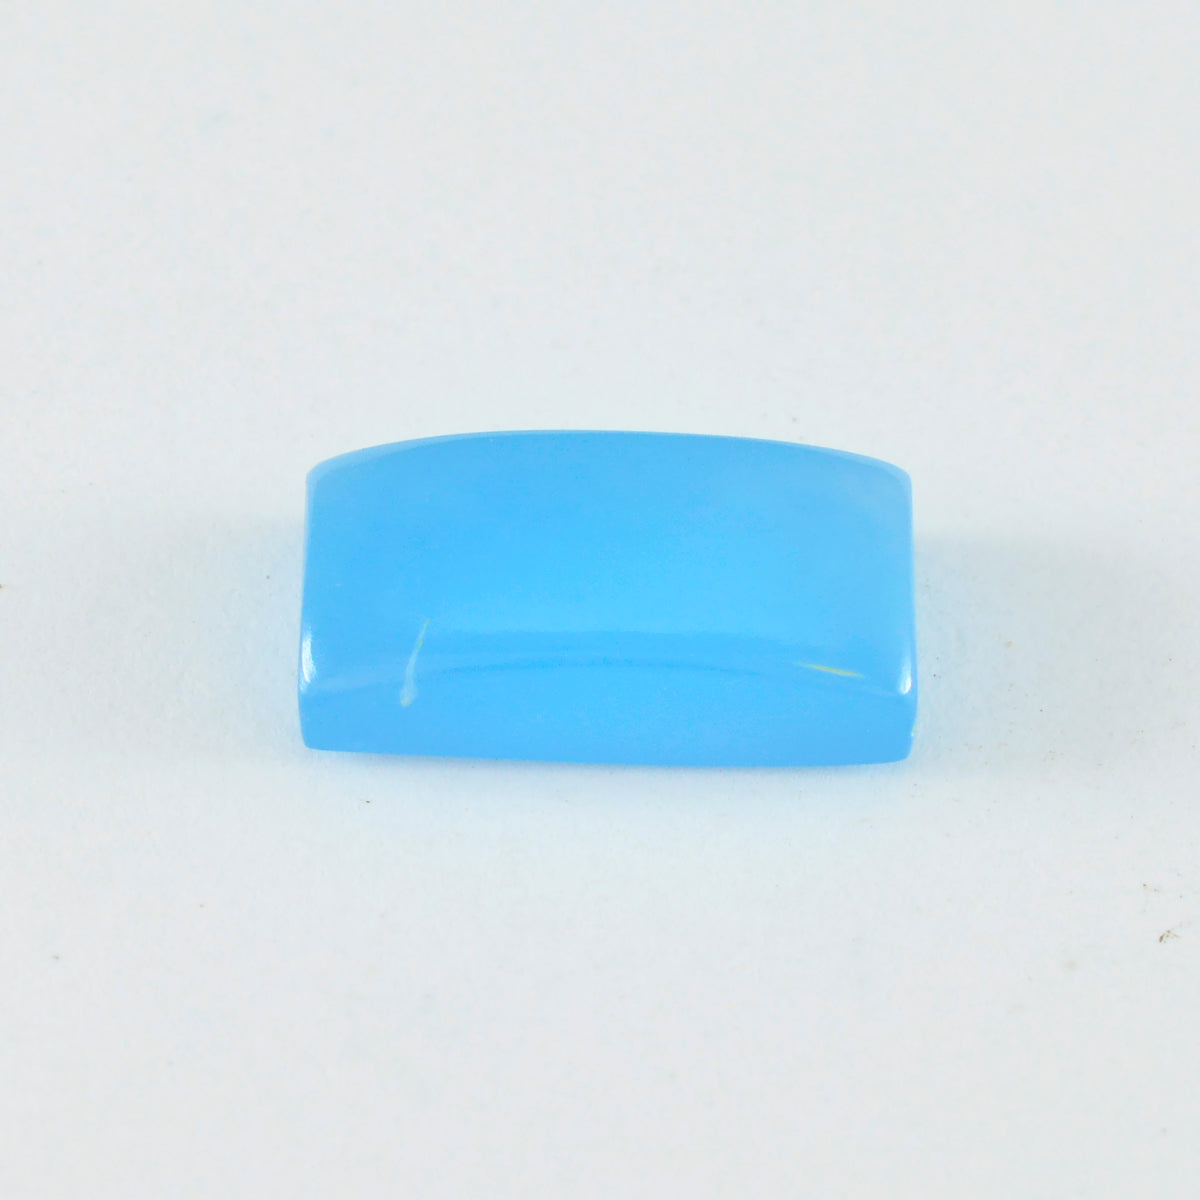 Riyogems 1 Stück blauer Chalcedon-Cabochon, 9 x 18 mm, Baguett-Form, A+1-Qualitätsstein